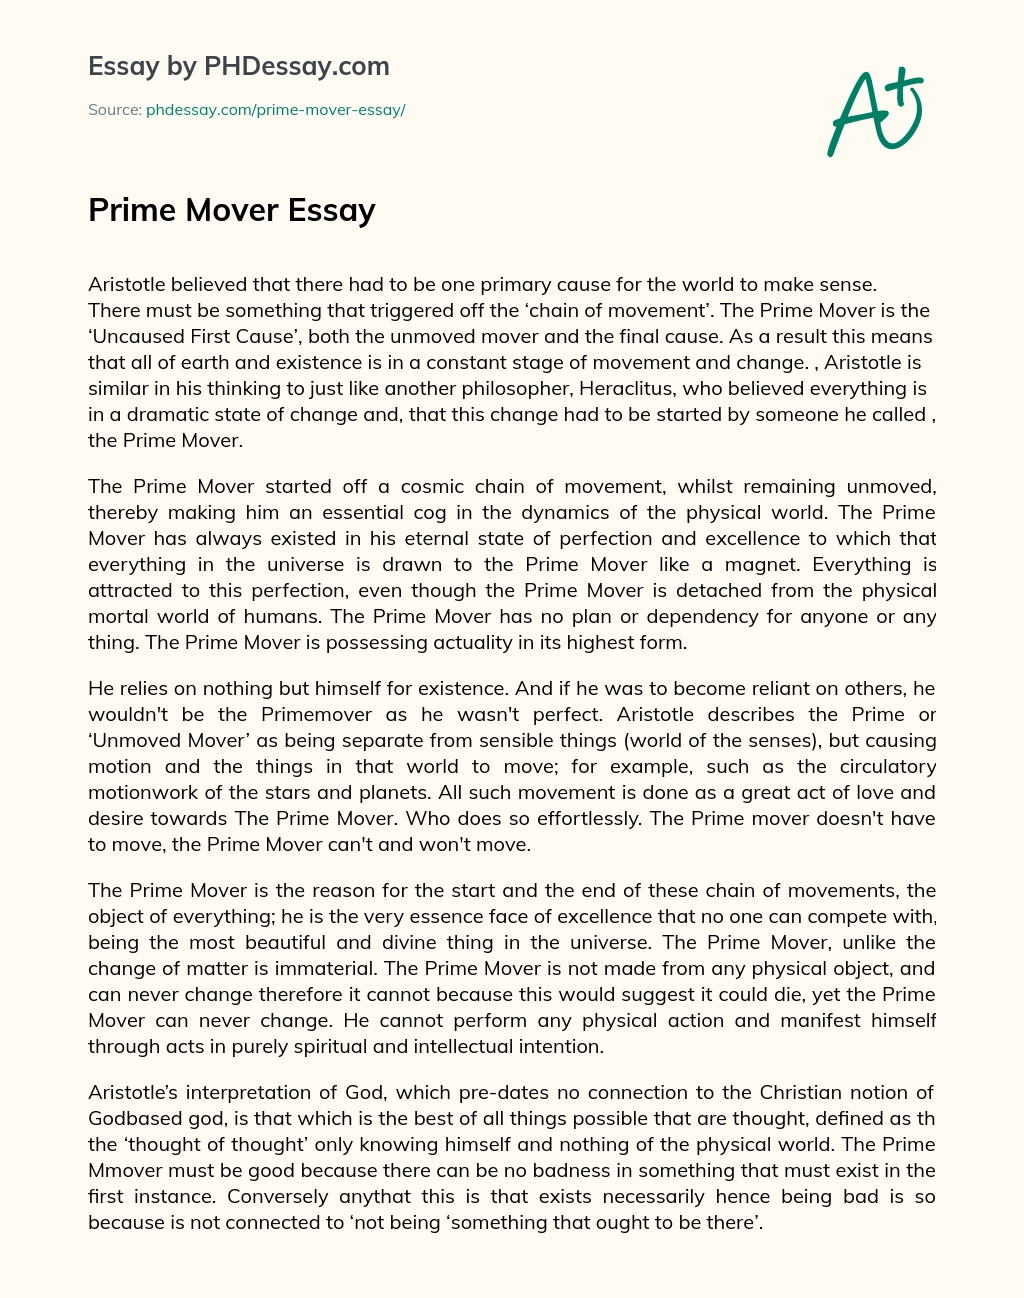 Prime Mover Essay essay